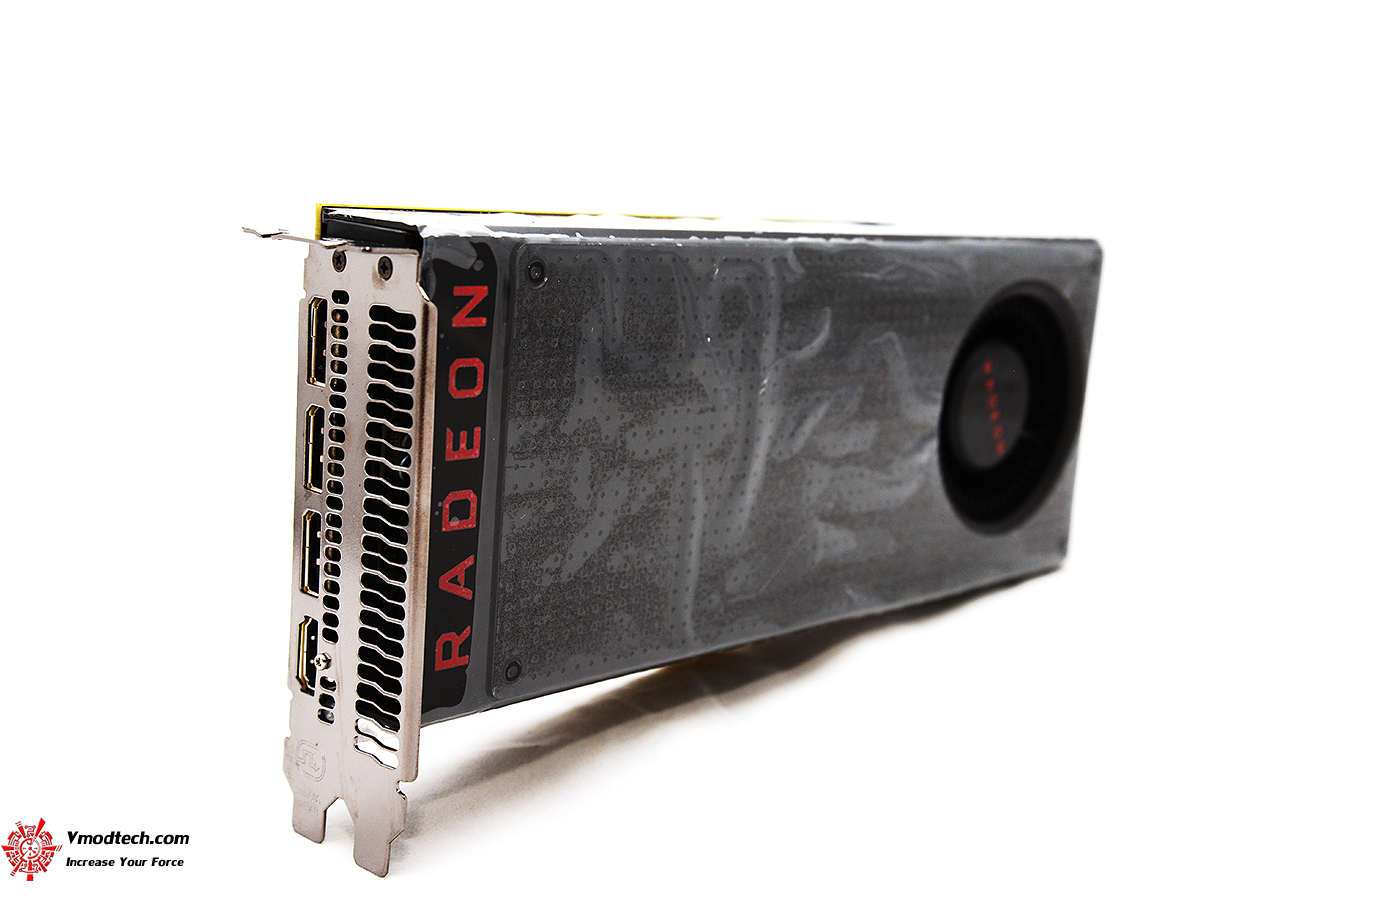 dsc 1115 AMD Radeon RX 480 New Driver AMD Radeon Software Crimson 16.7.1 Comparison Review